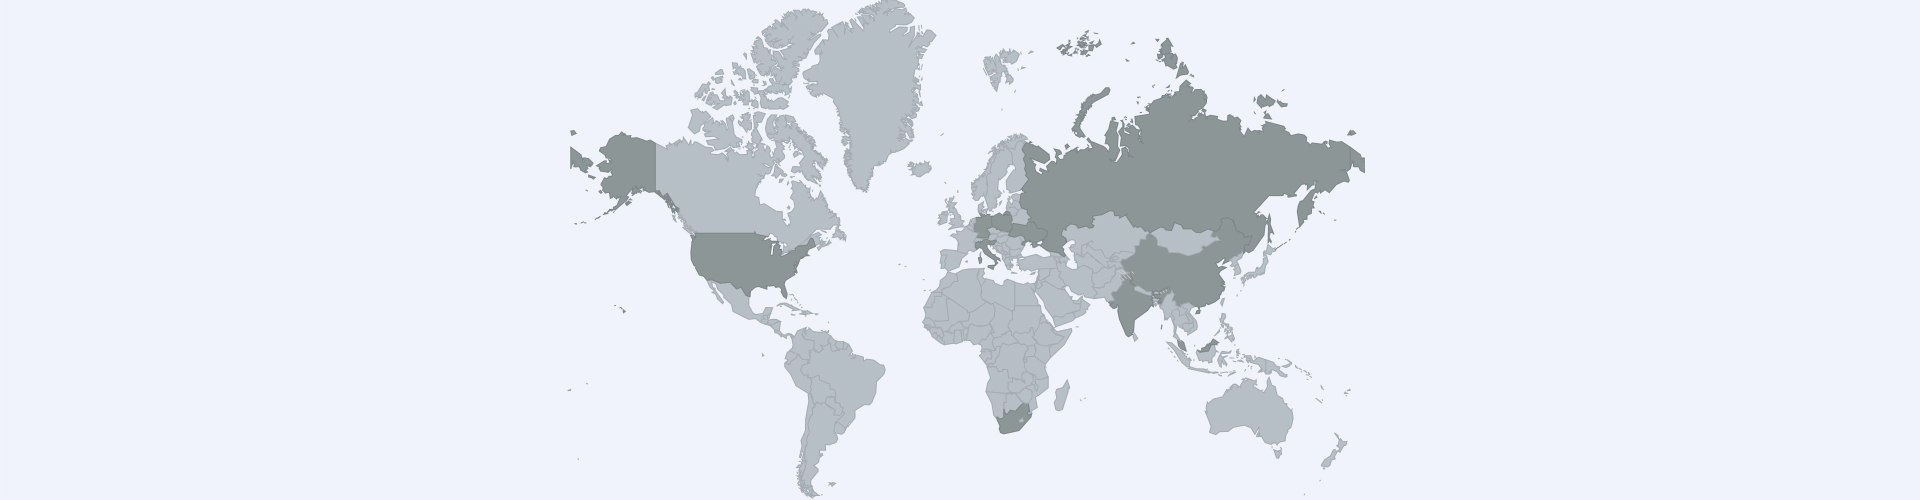 Übersichtskarte der Welt in grauen Farben.